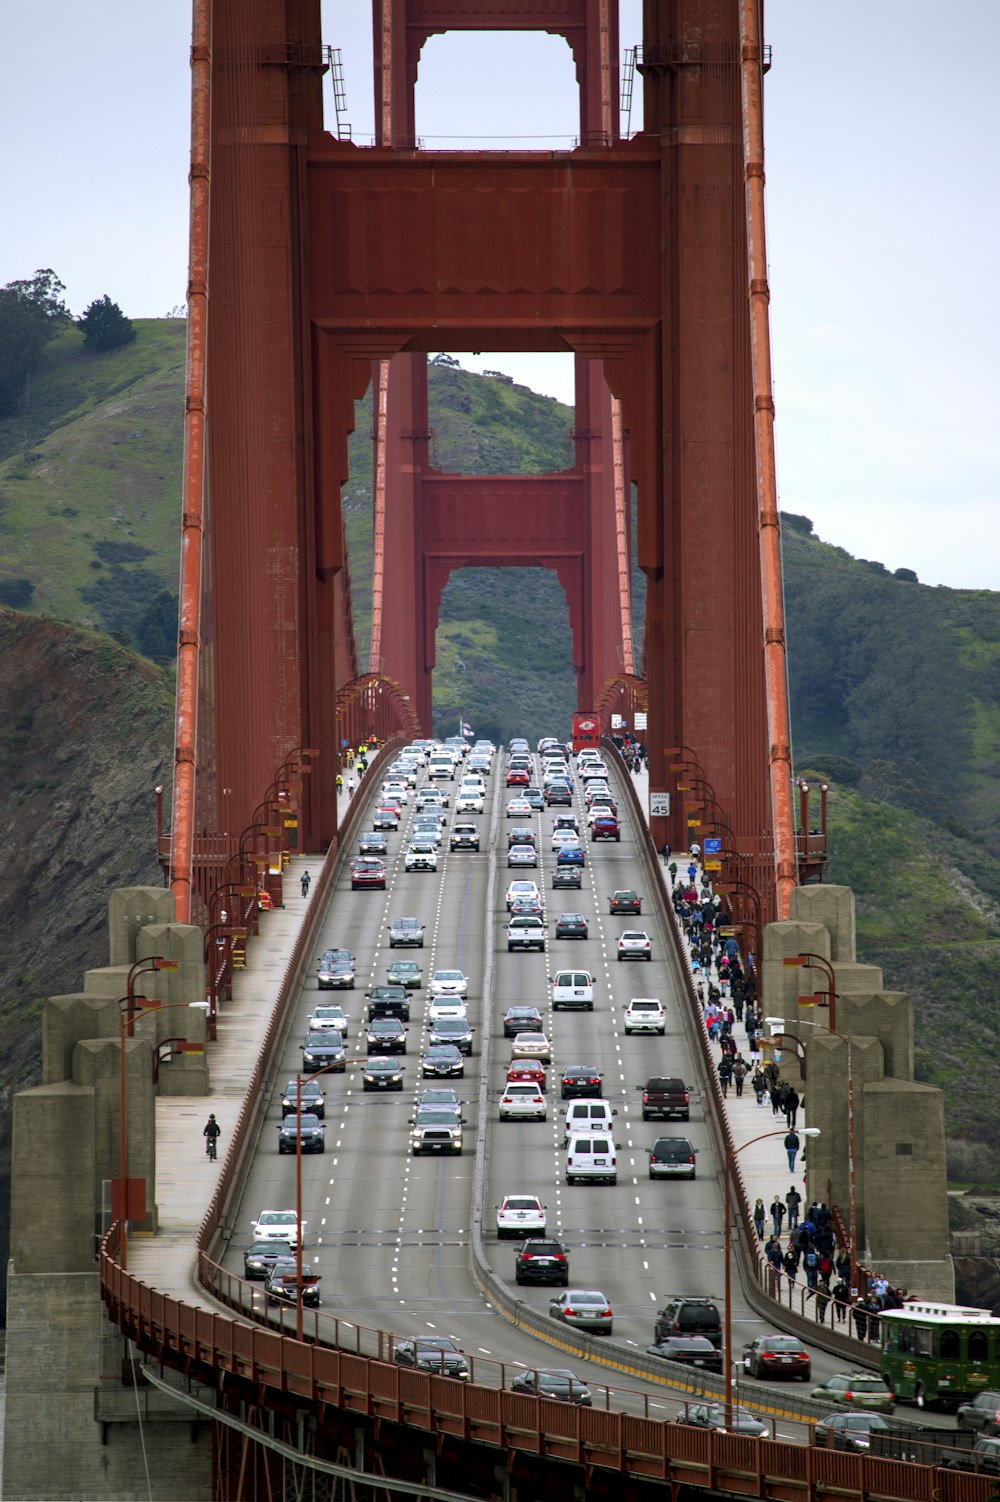 cars on bridge during daytime